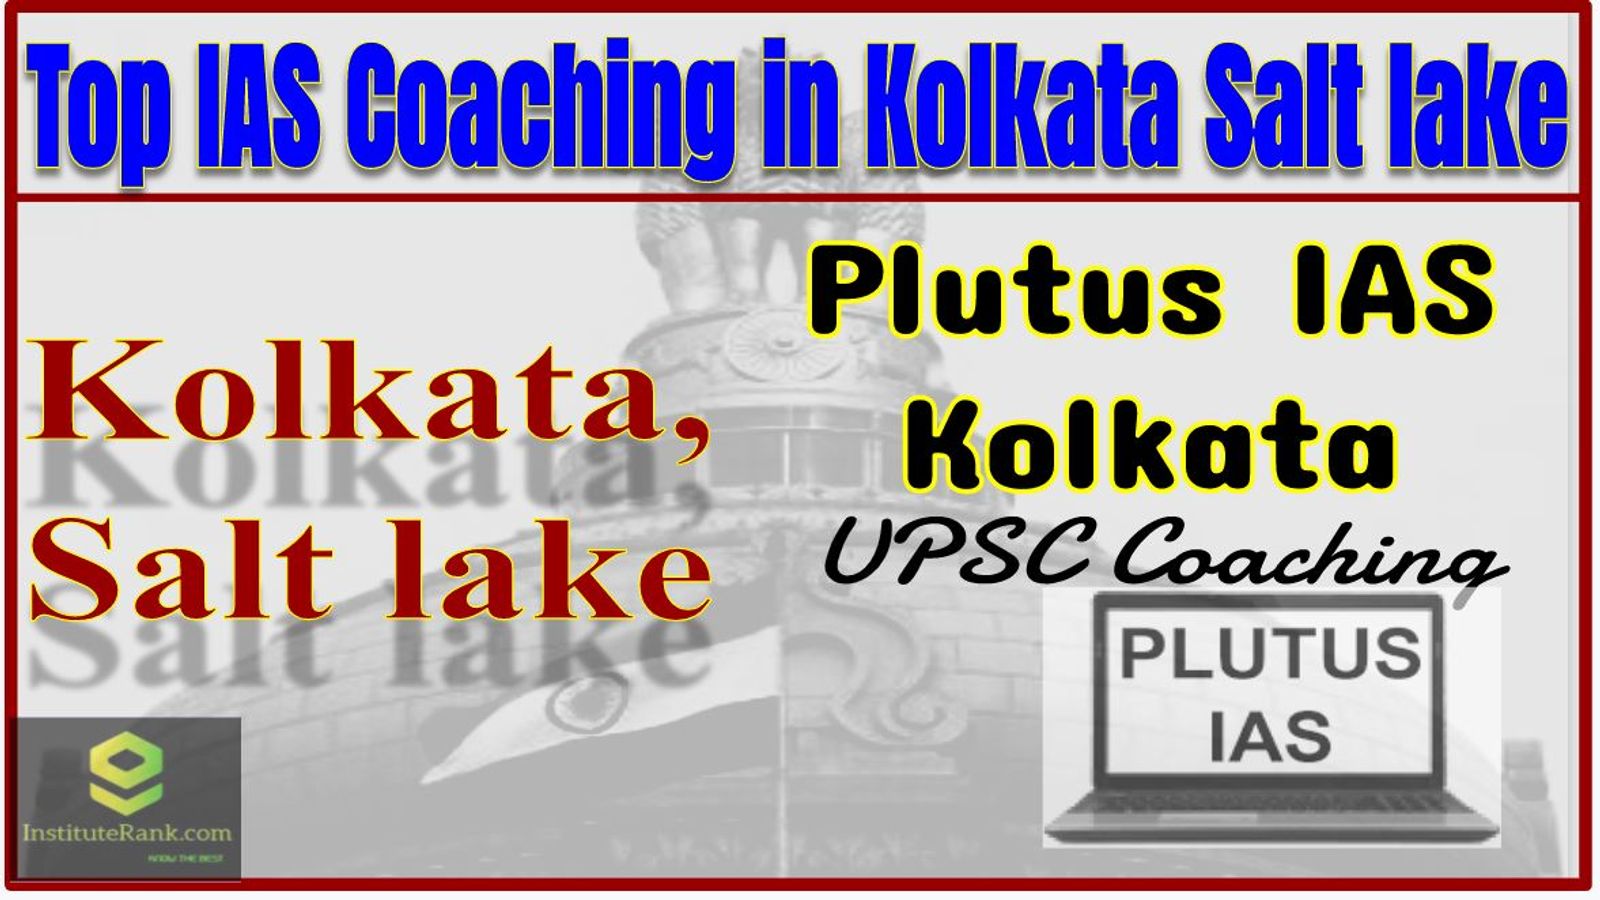 Top IAS Coaching in Kolkata Salt lake